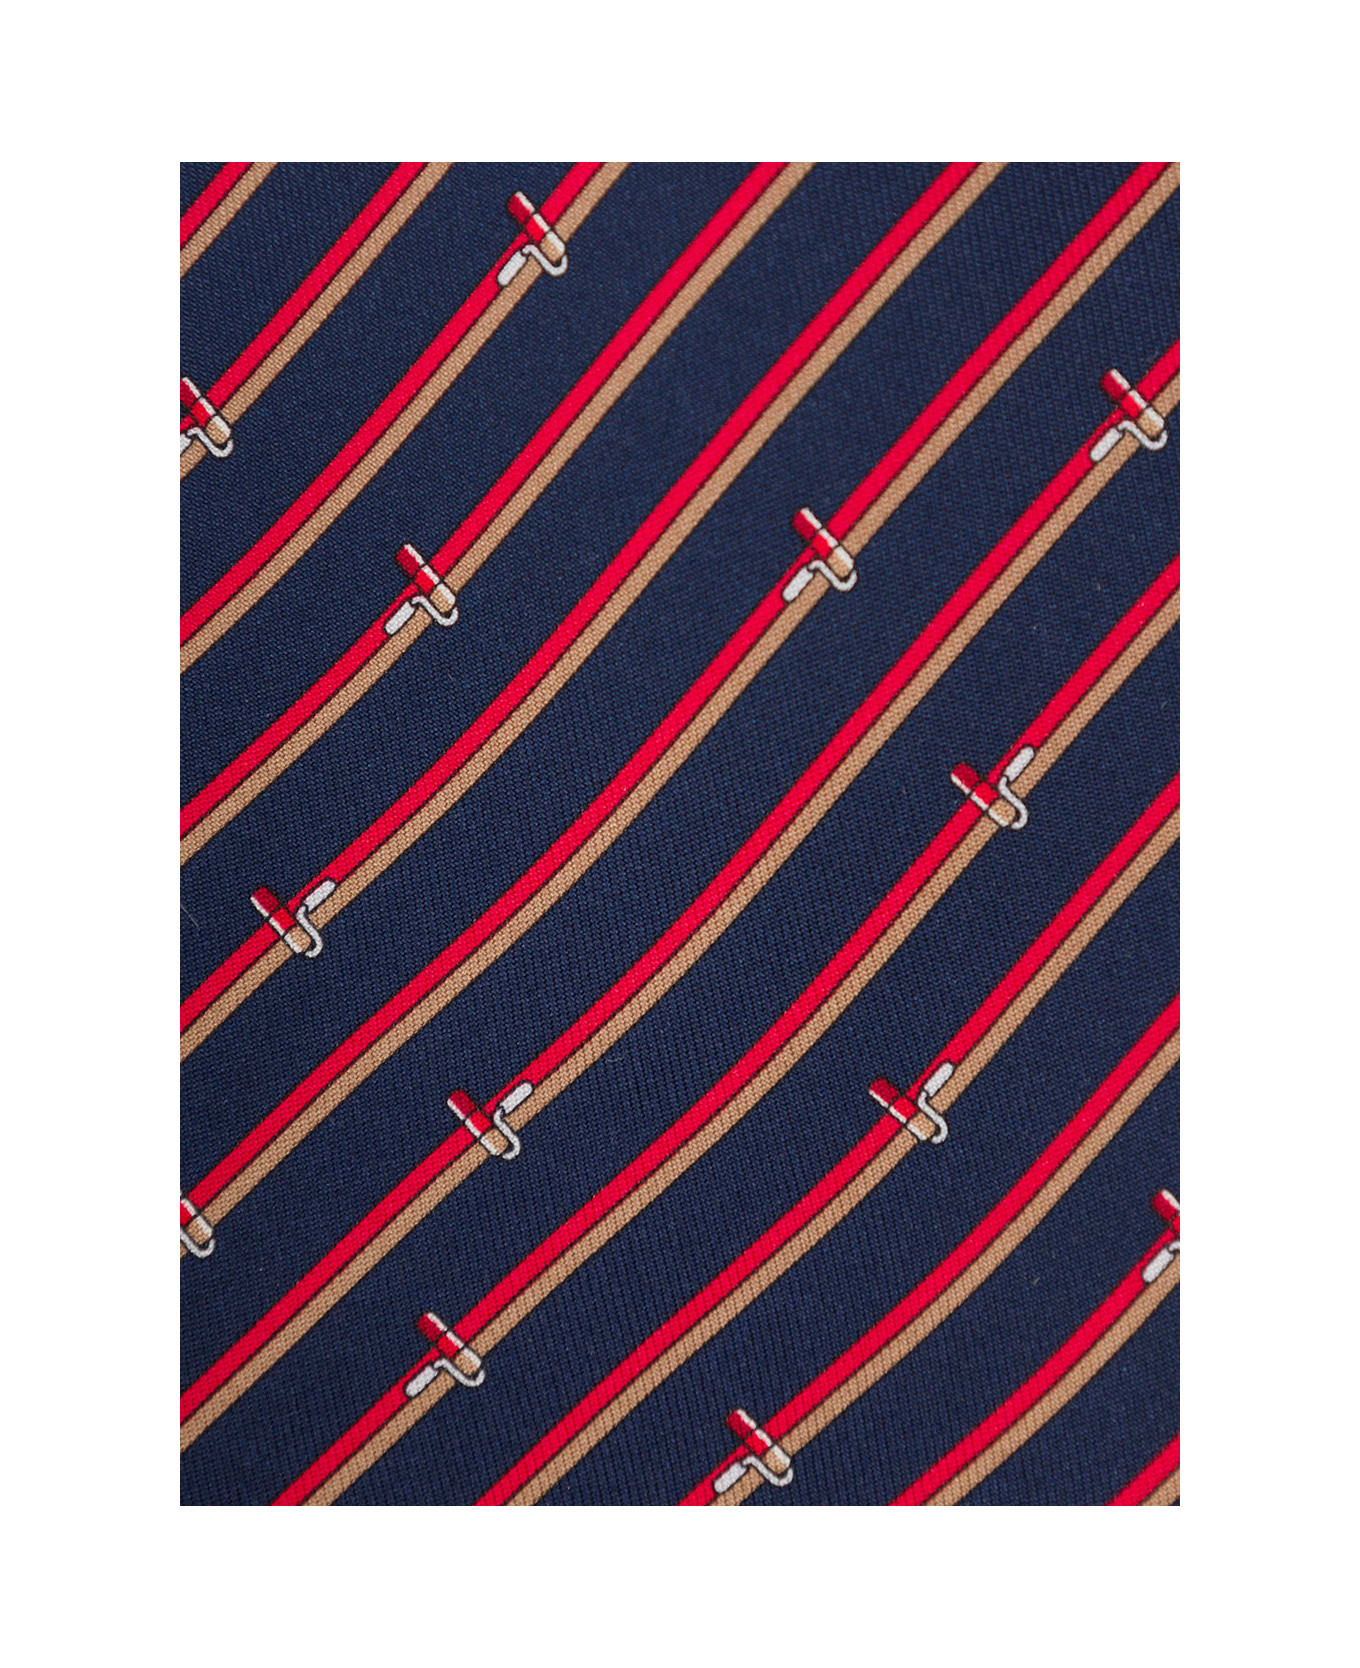 Ferragamo Navy Red And Gold Silk Tie - Blu